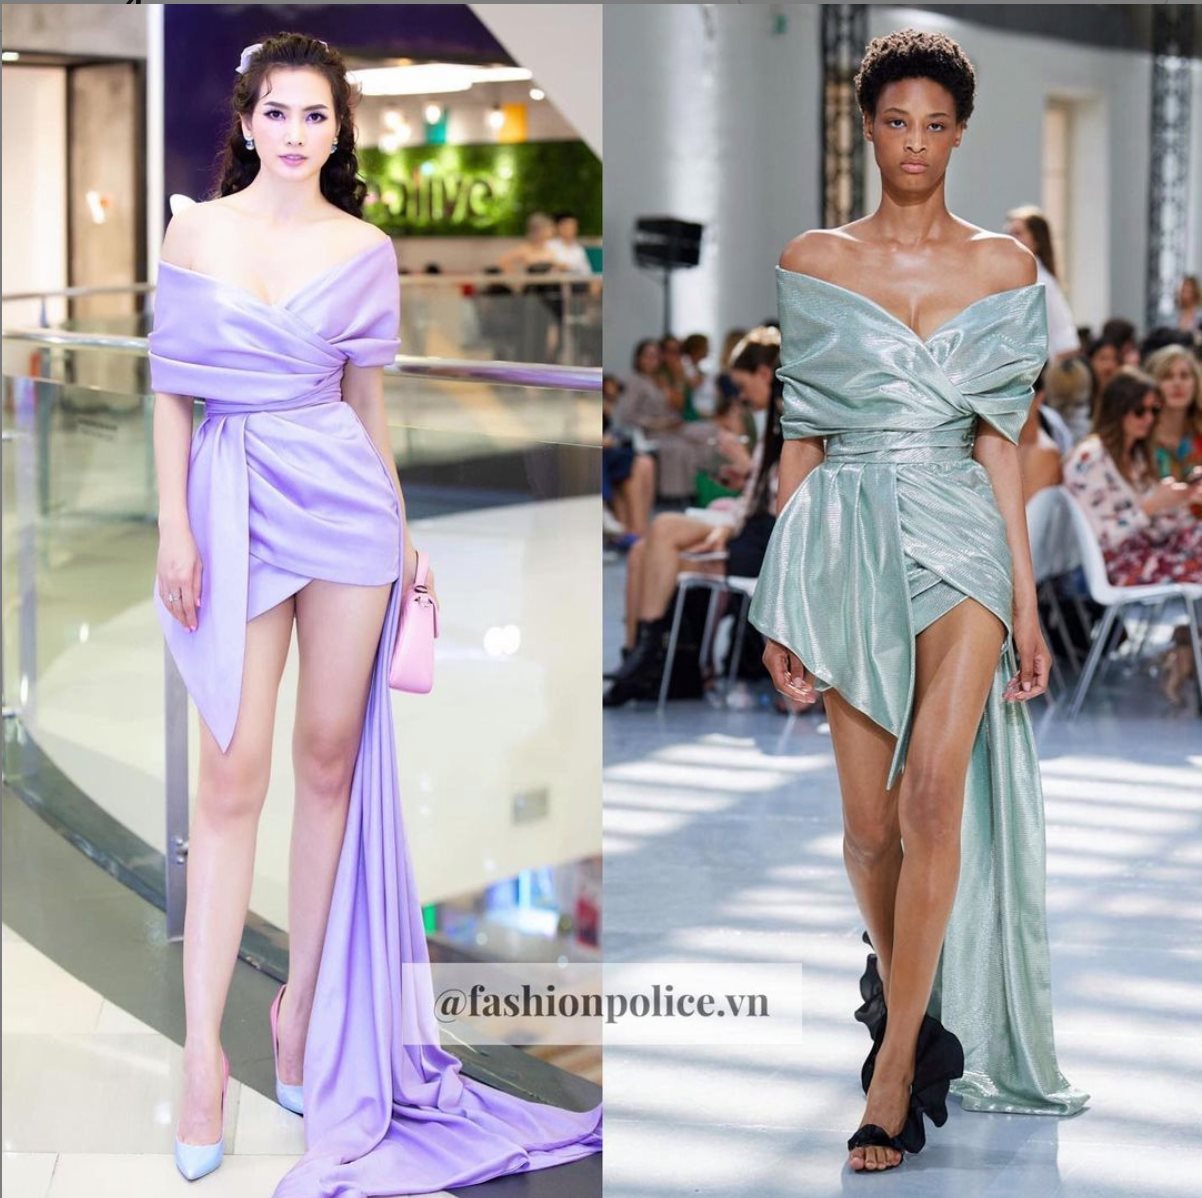 Đạo nhái đã đành ngay cả màu sắc của mẫu váy cũng tạo cảm giác 'không tới'. Ảnh: @fashionpolice.vn